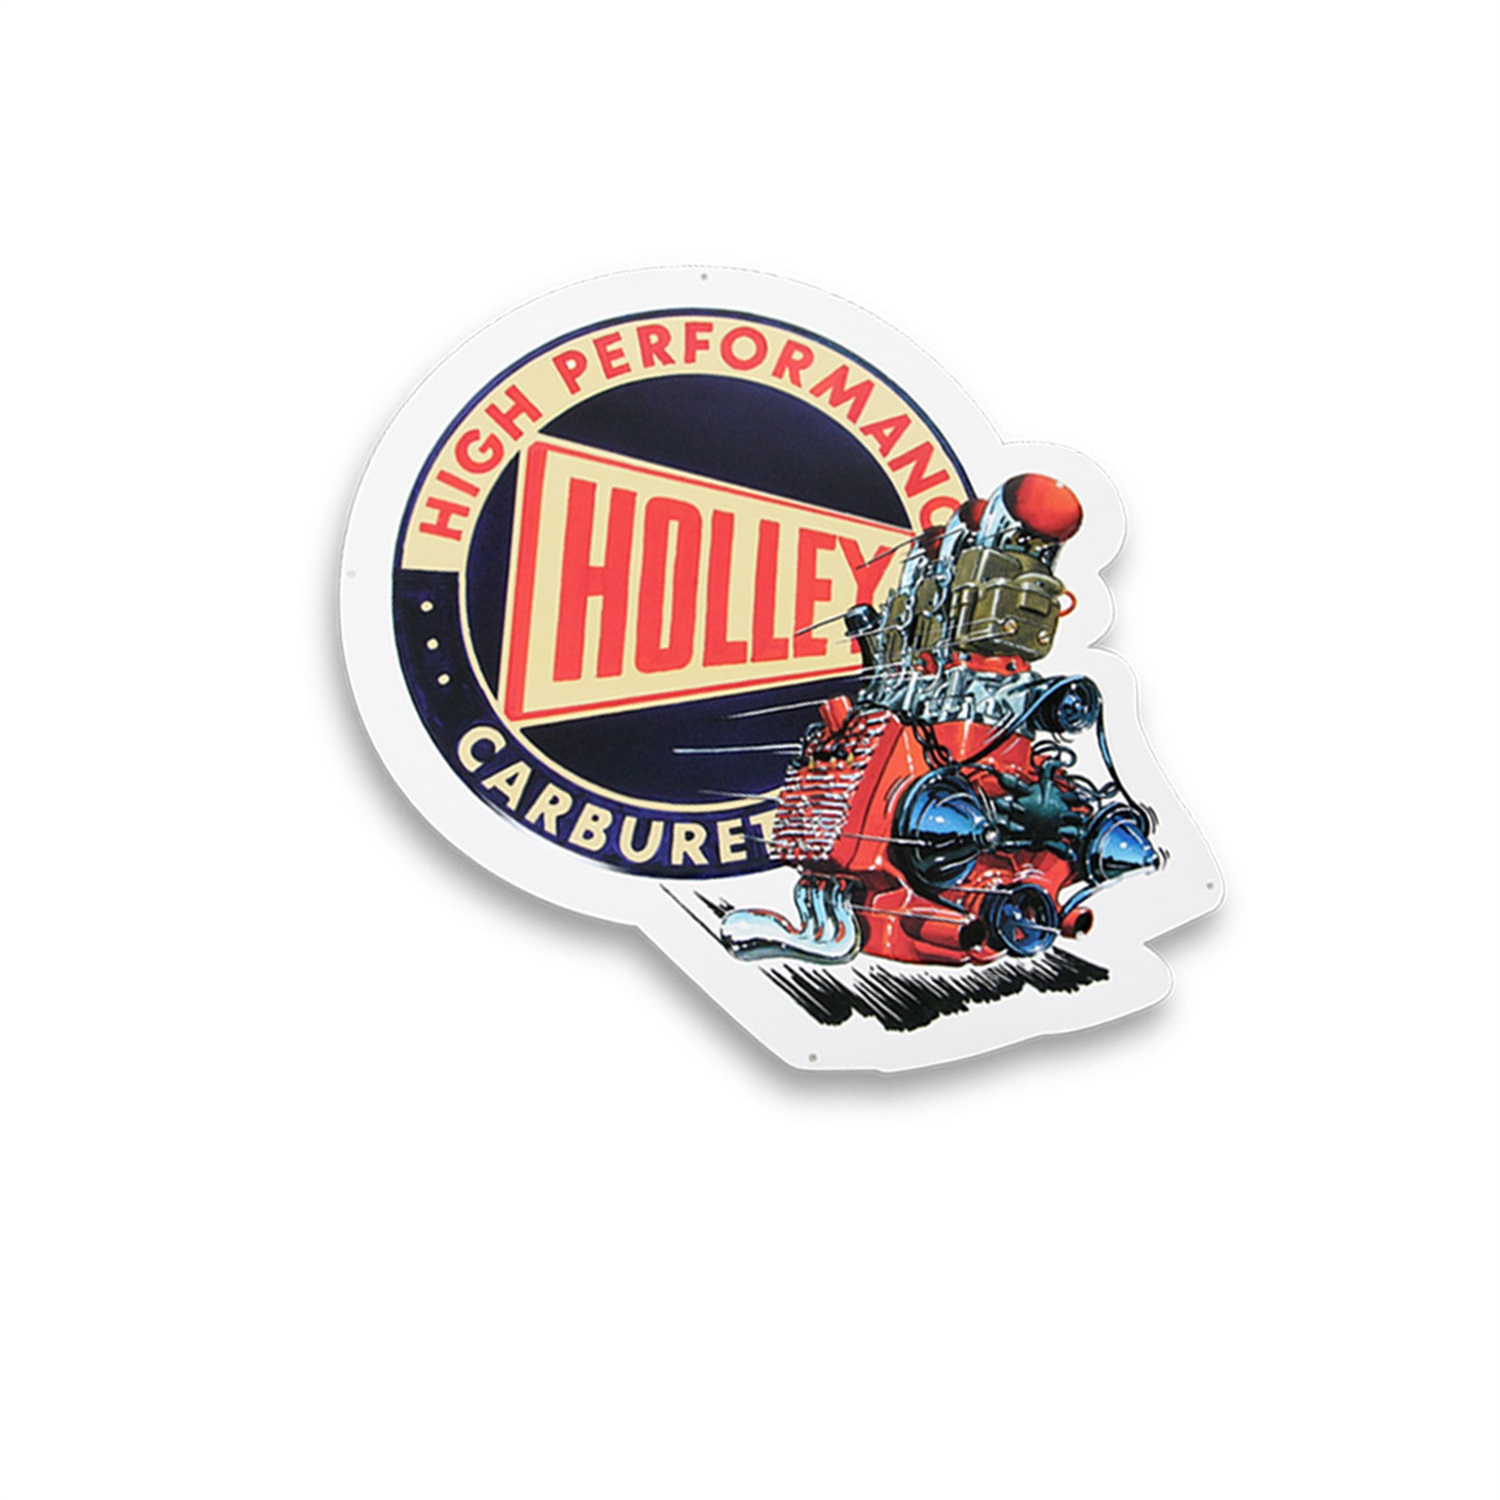 Holley Performance Holley Performance 10003HOL Holley Retro Metal Sign